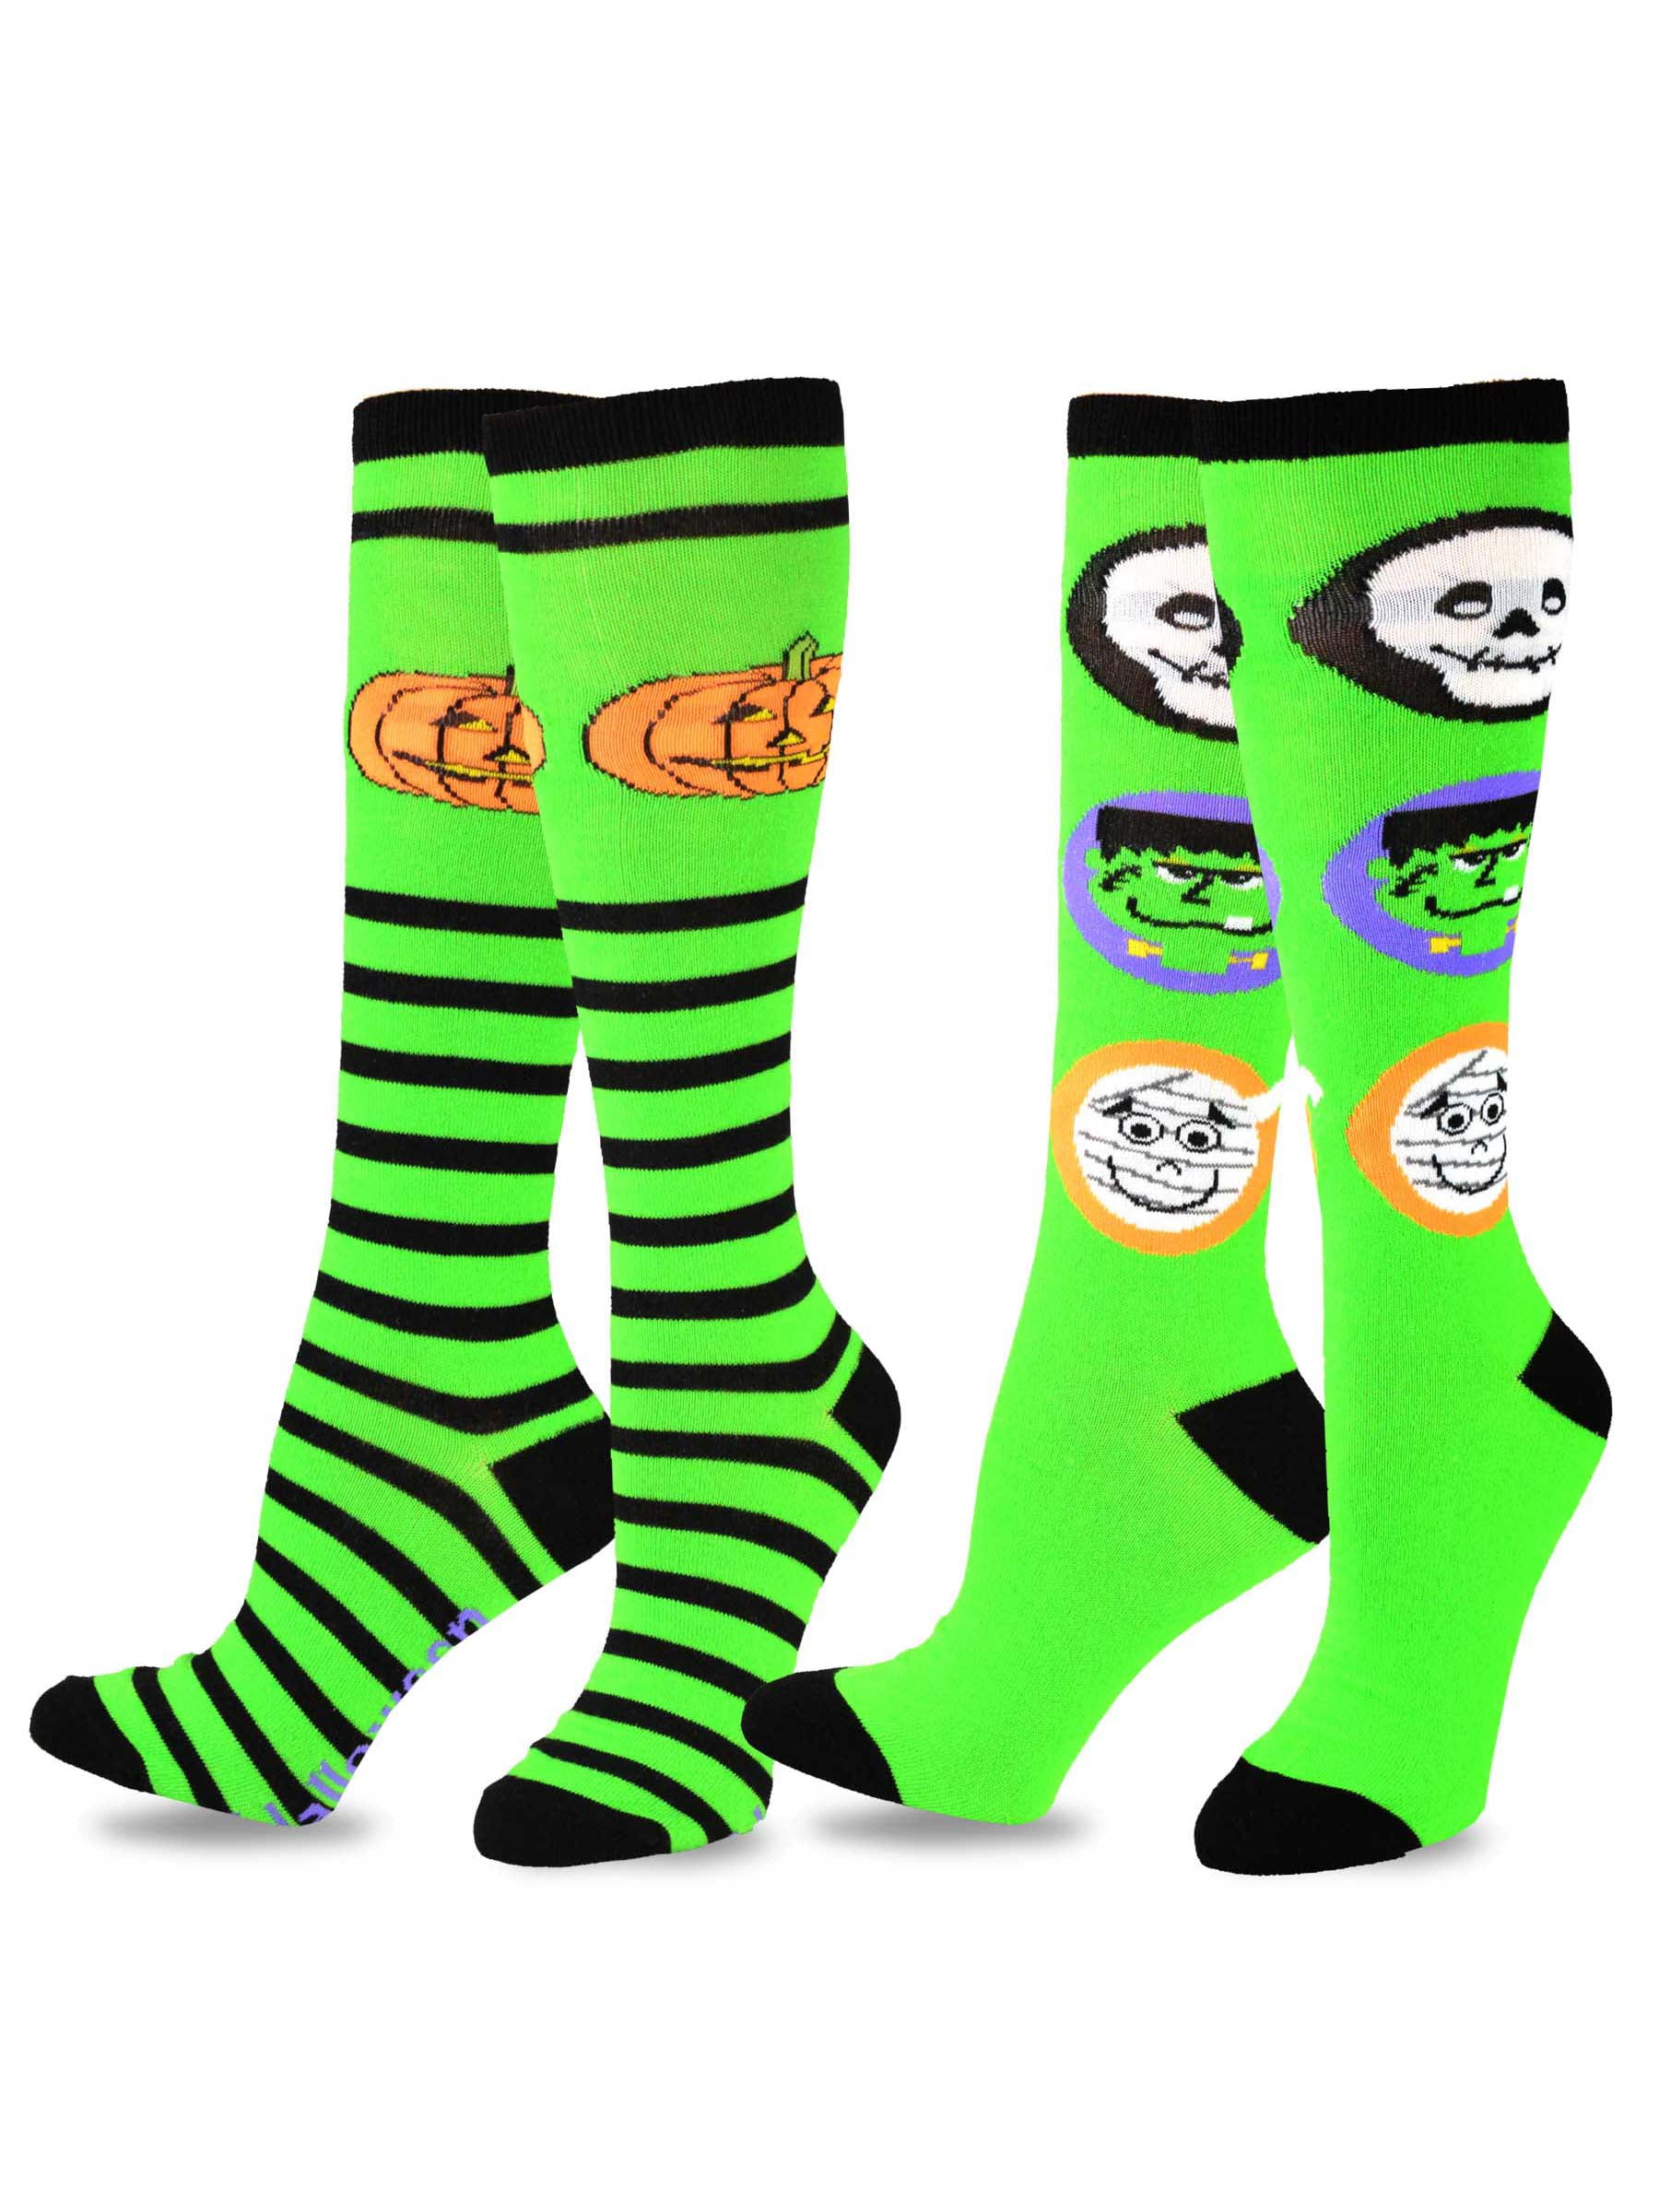 TeeHee Socks - TeeHee Novelty Halloween Fun Knee High Socks for Women 2 ...